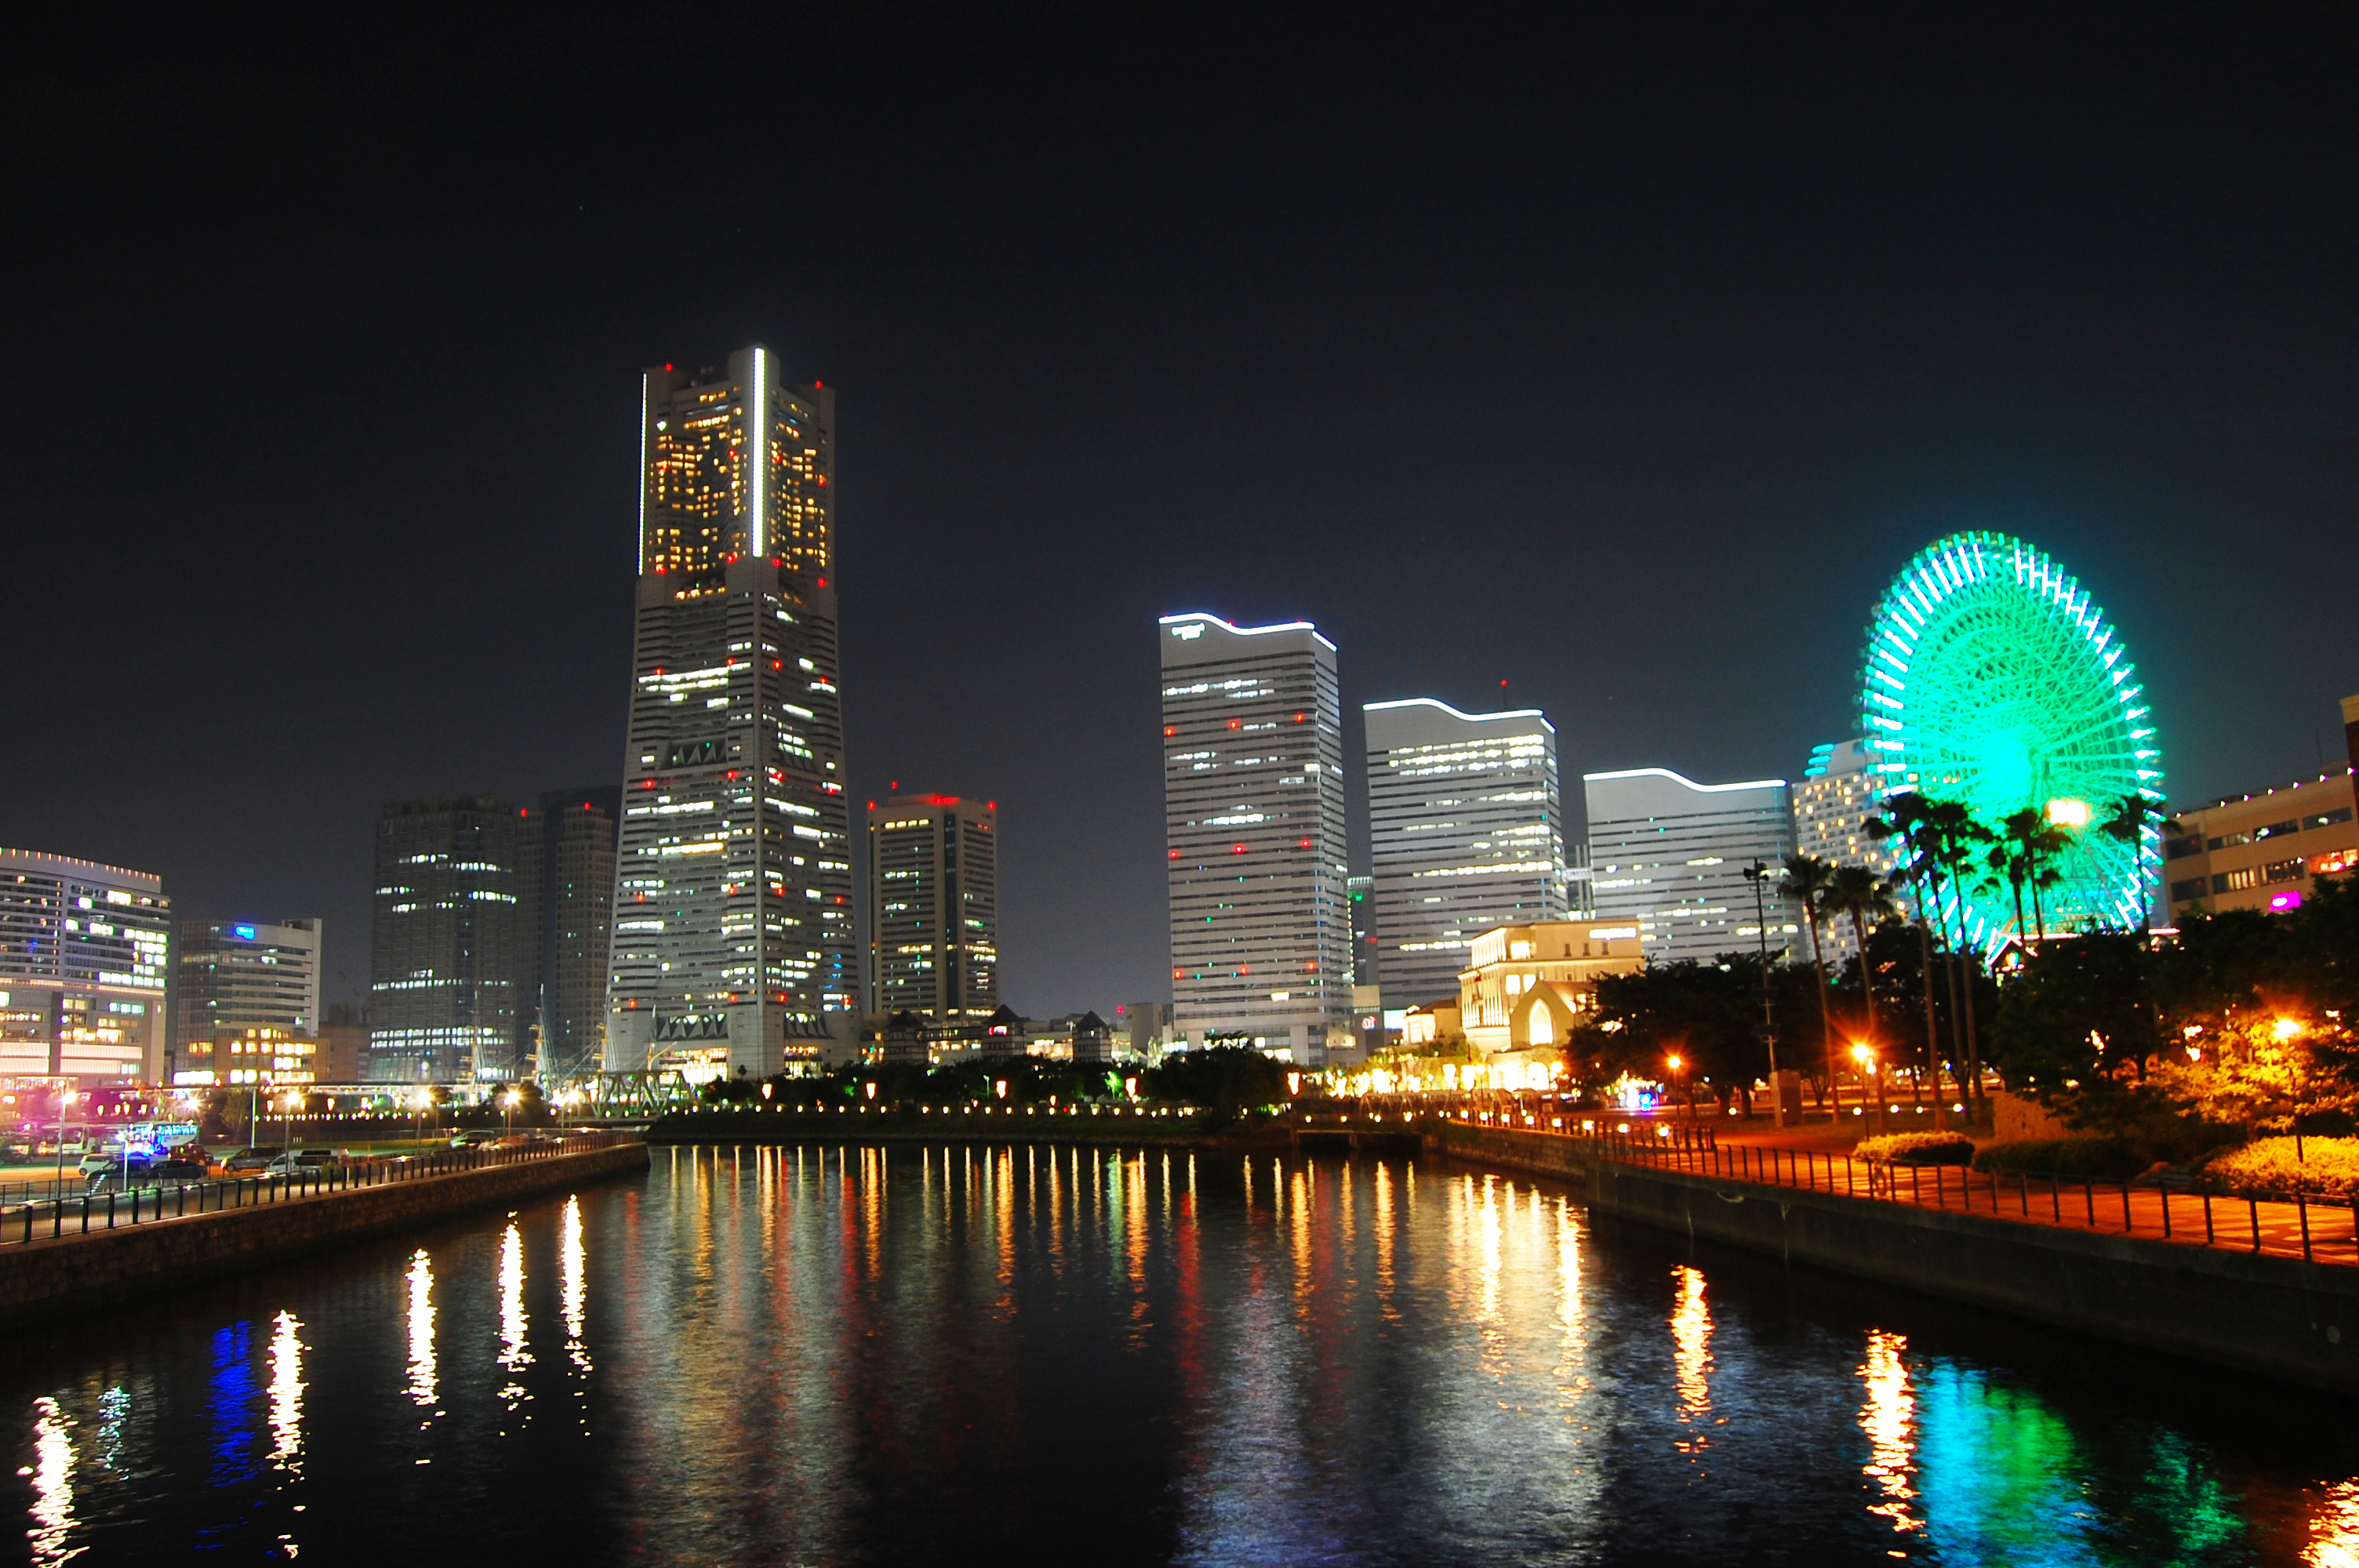 横浜の夜景 横浜みなとみらいの夜景 フリー素材ドットコム